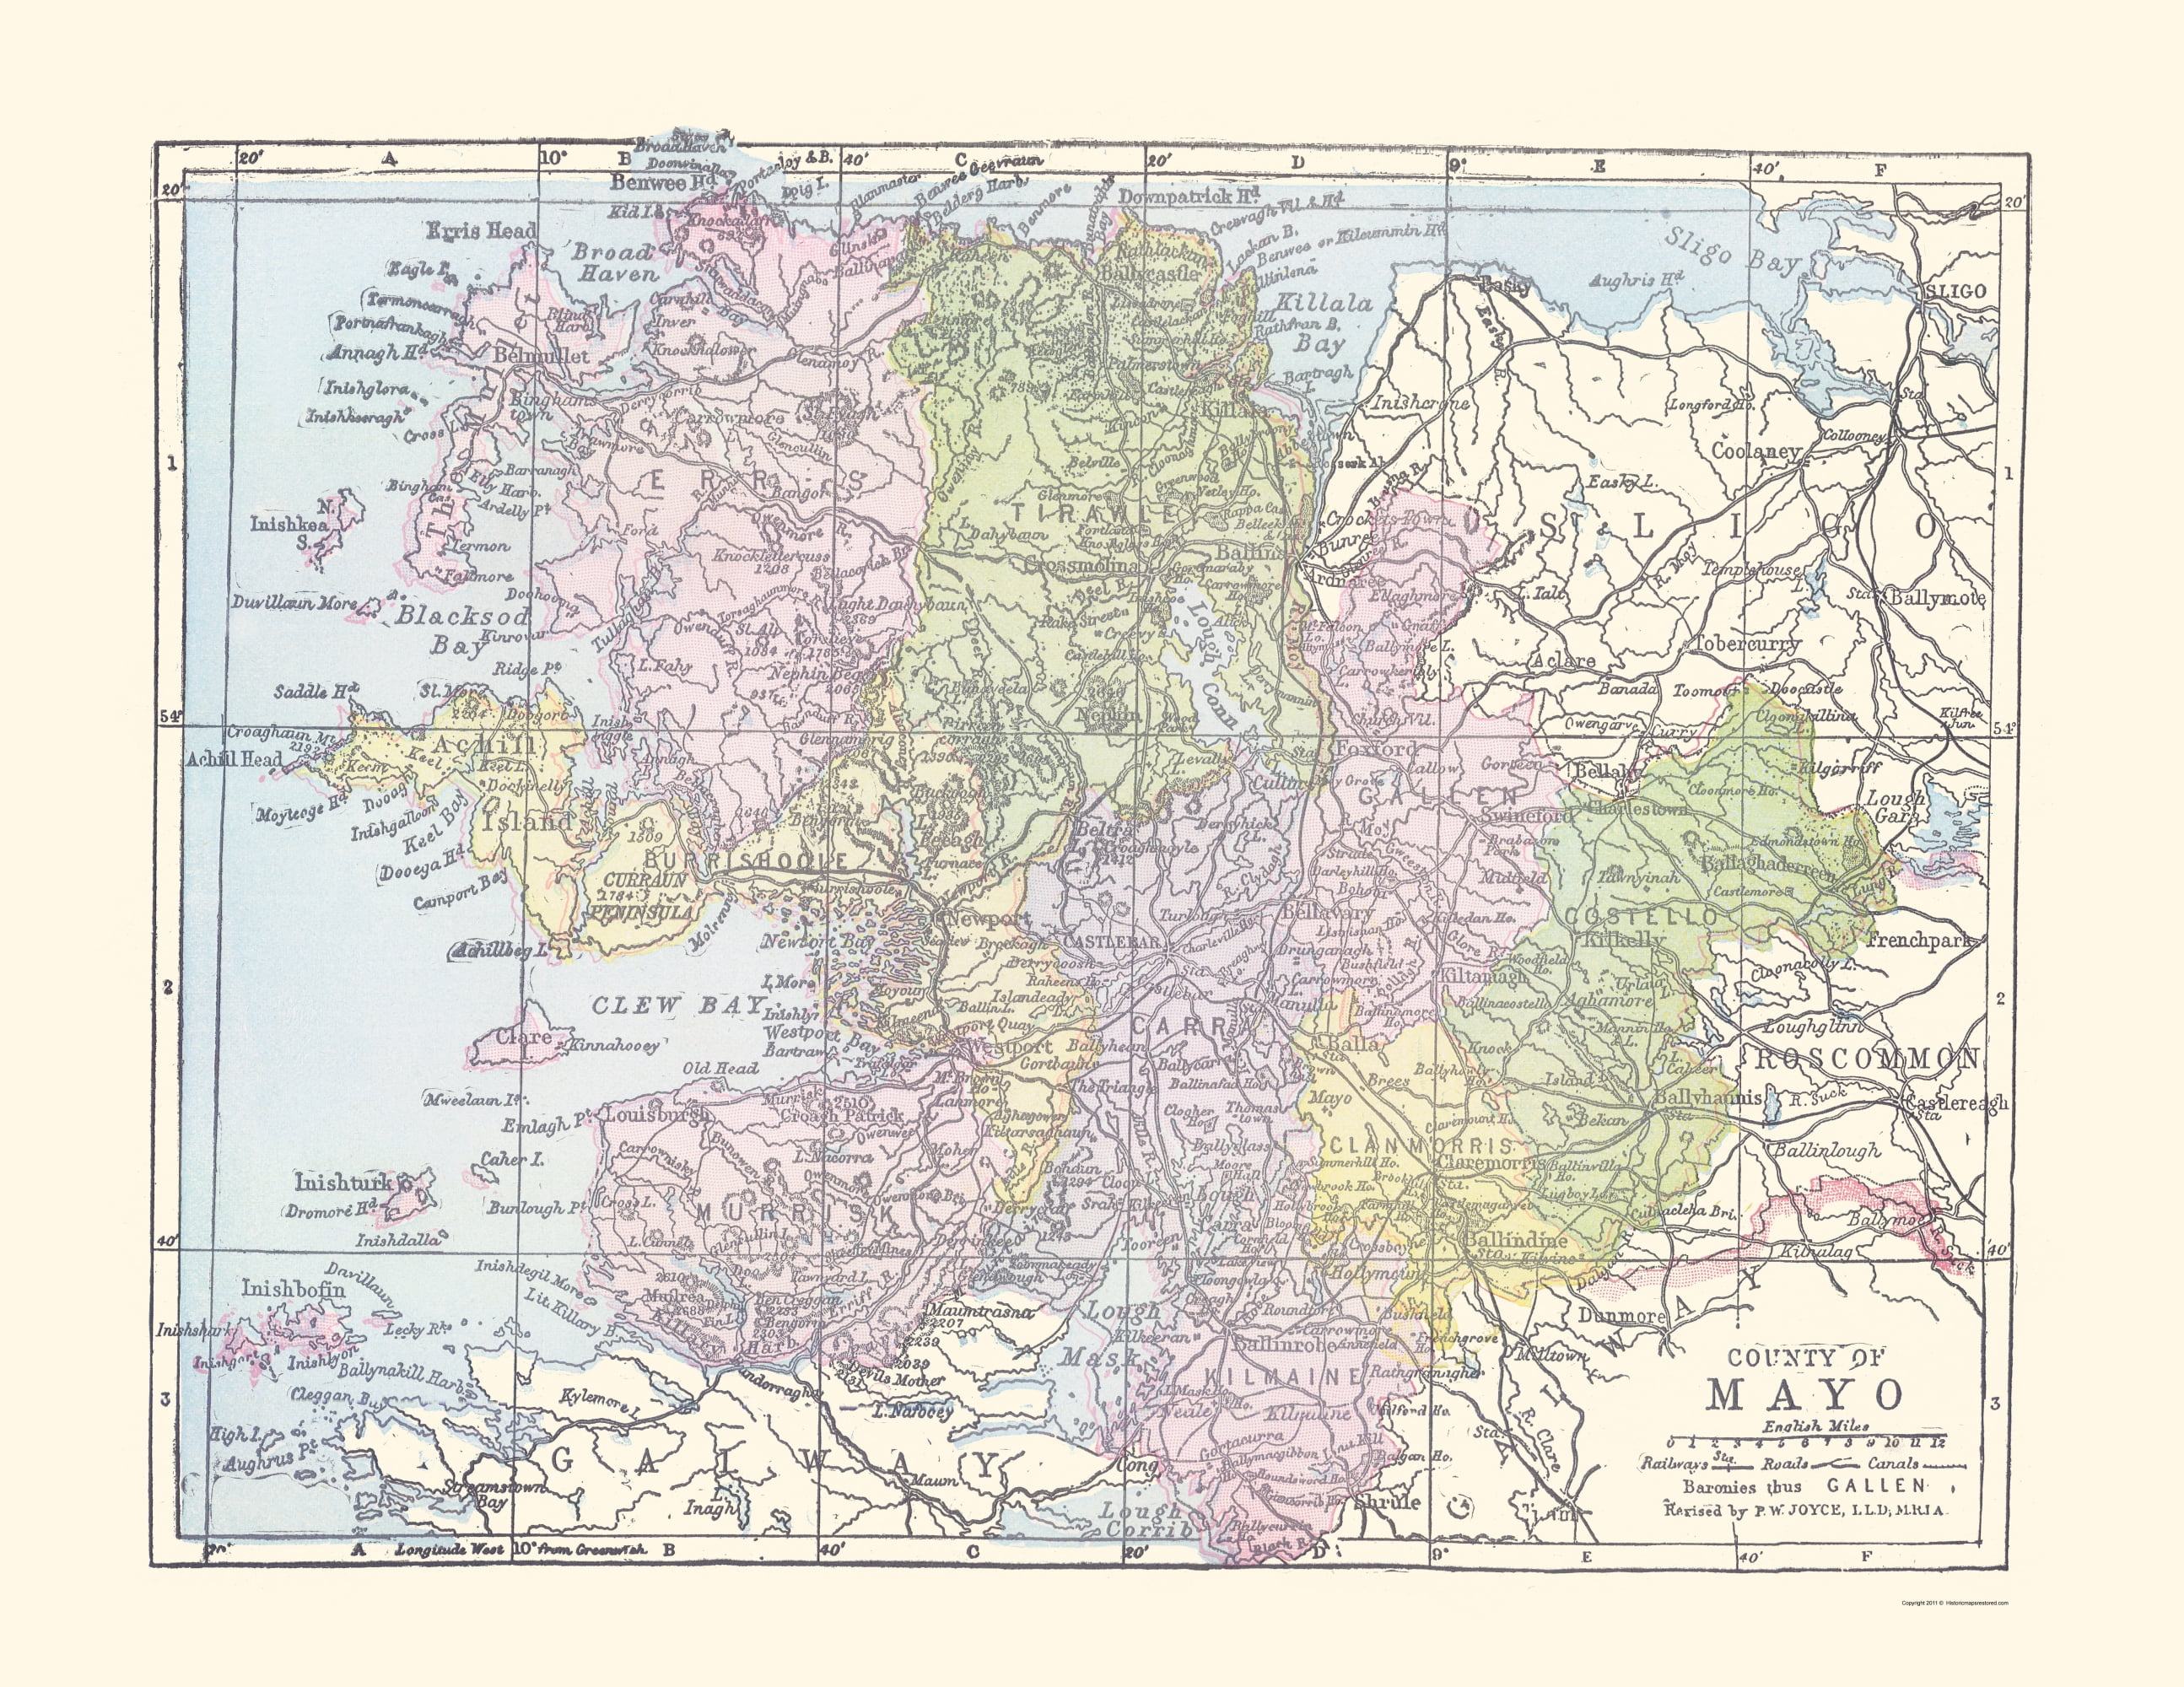 Mayo County Ireland Bartholomew 1882-23.00 x 29.77